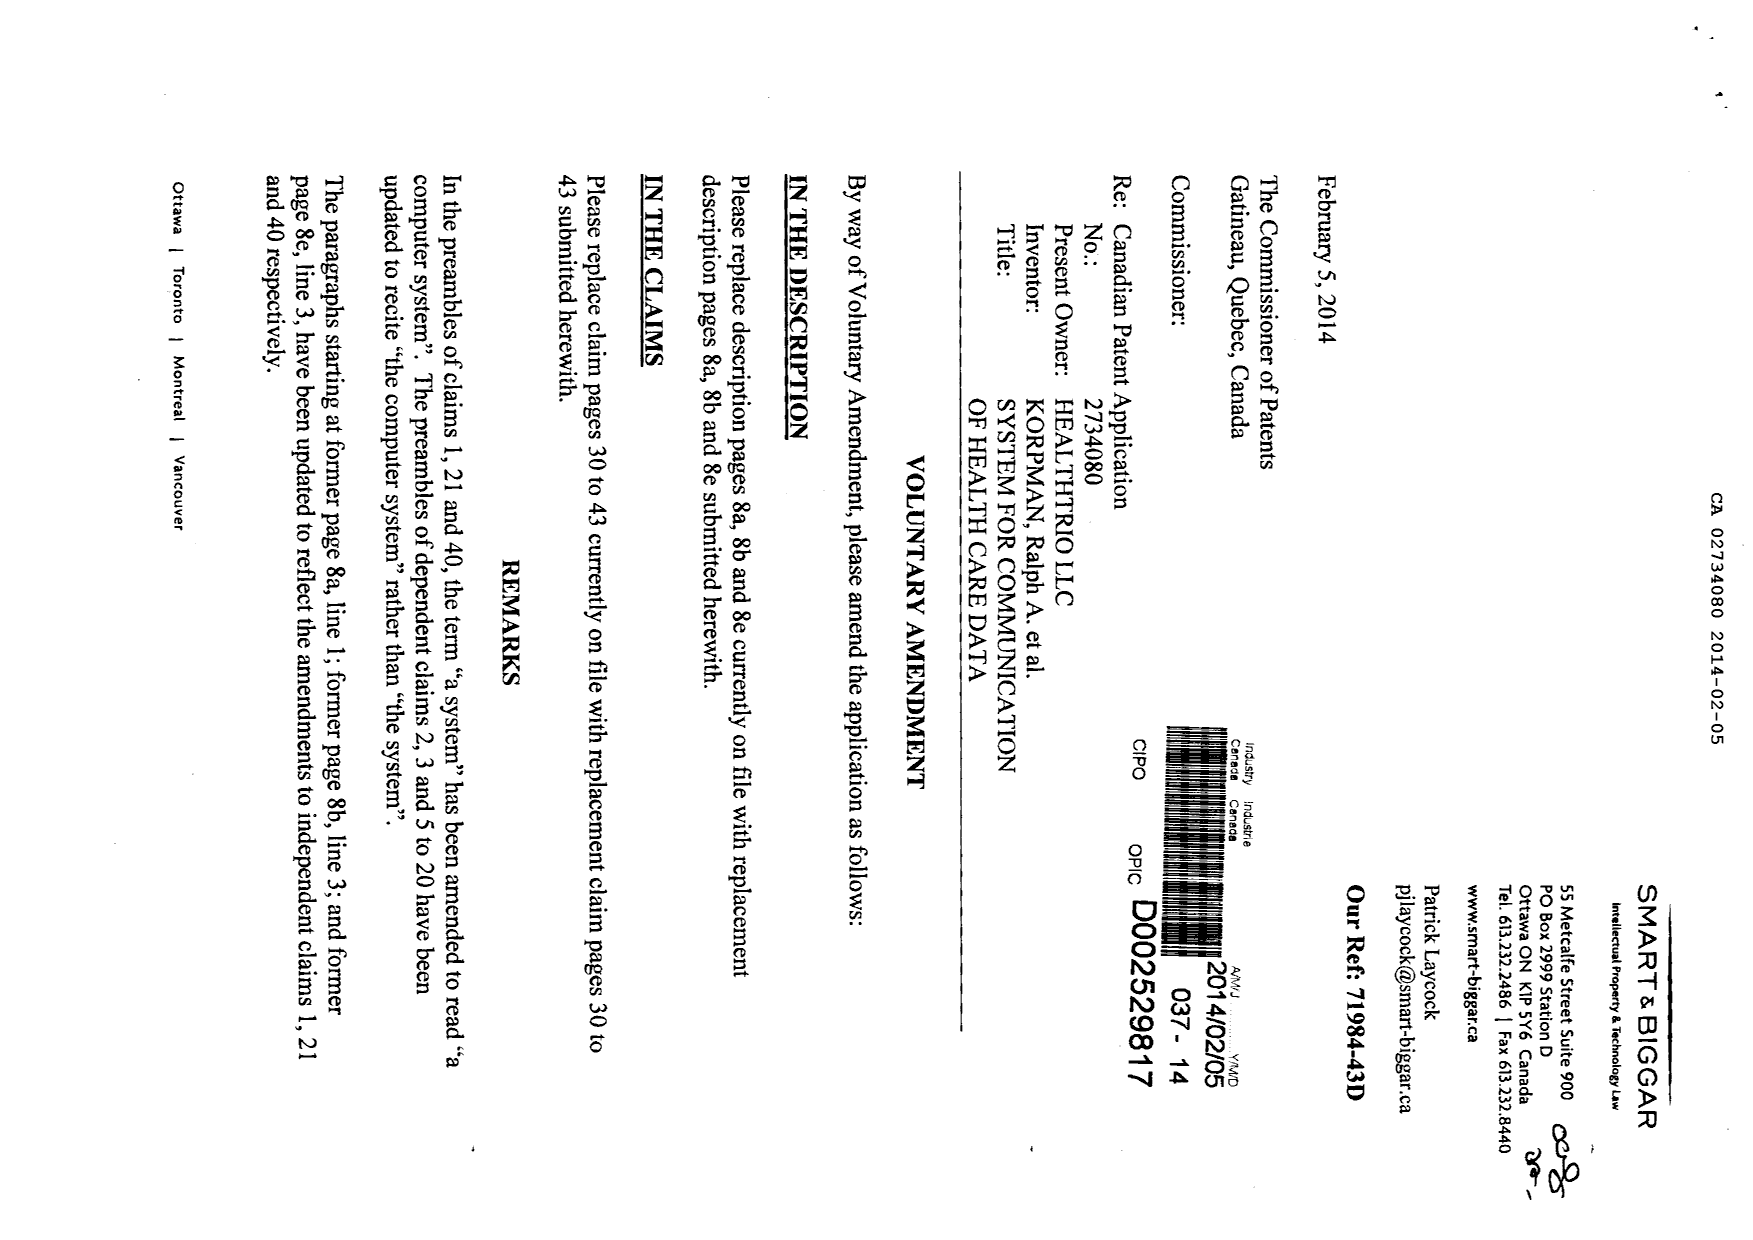 Document de brevet canadien 2734080. Poursuite-Amendment 20140205. Image 1 de 19